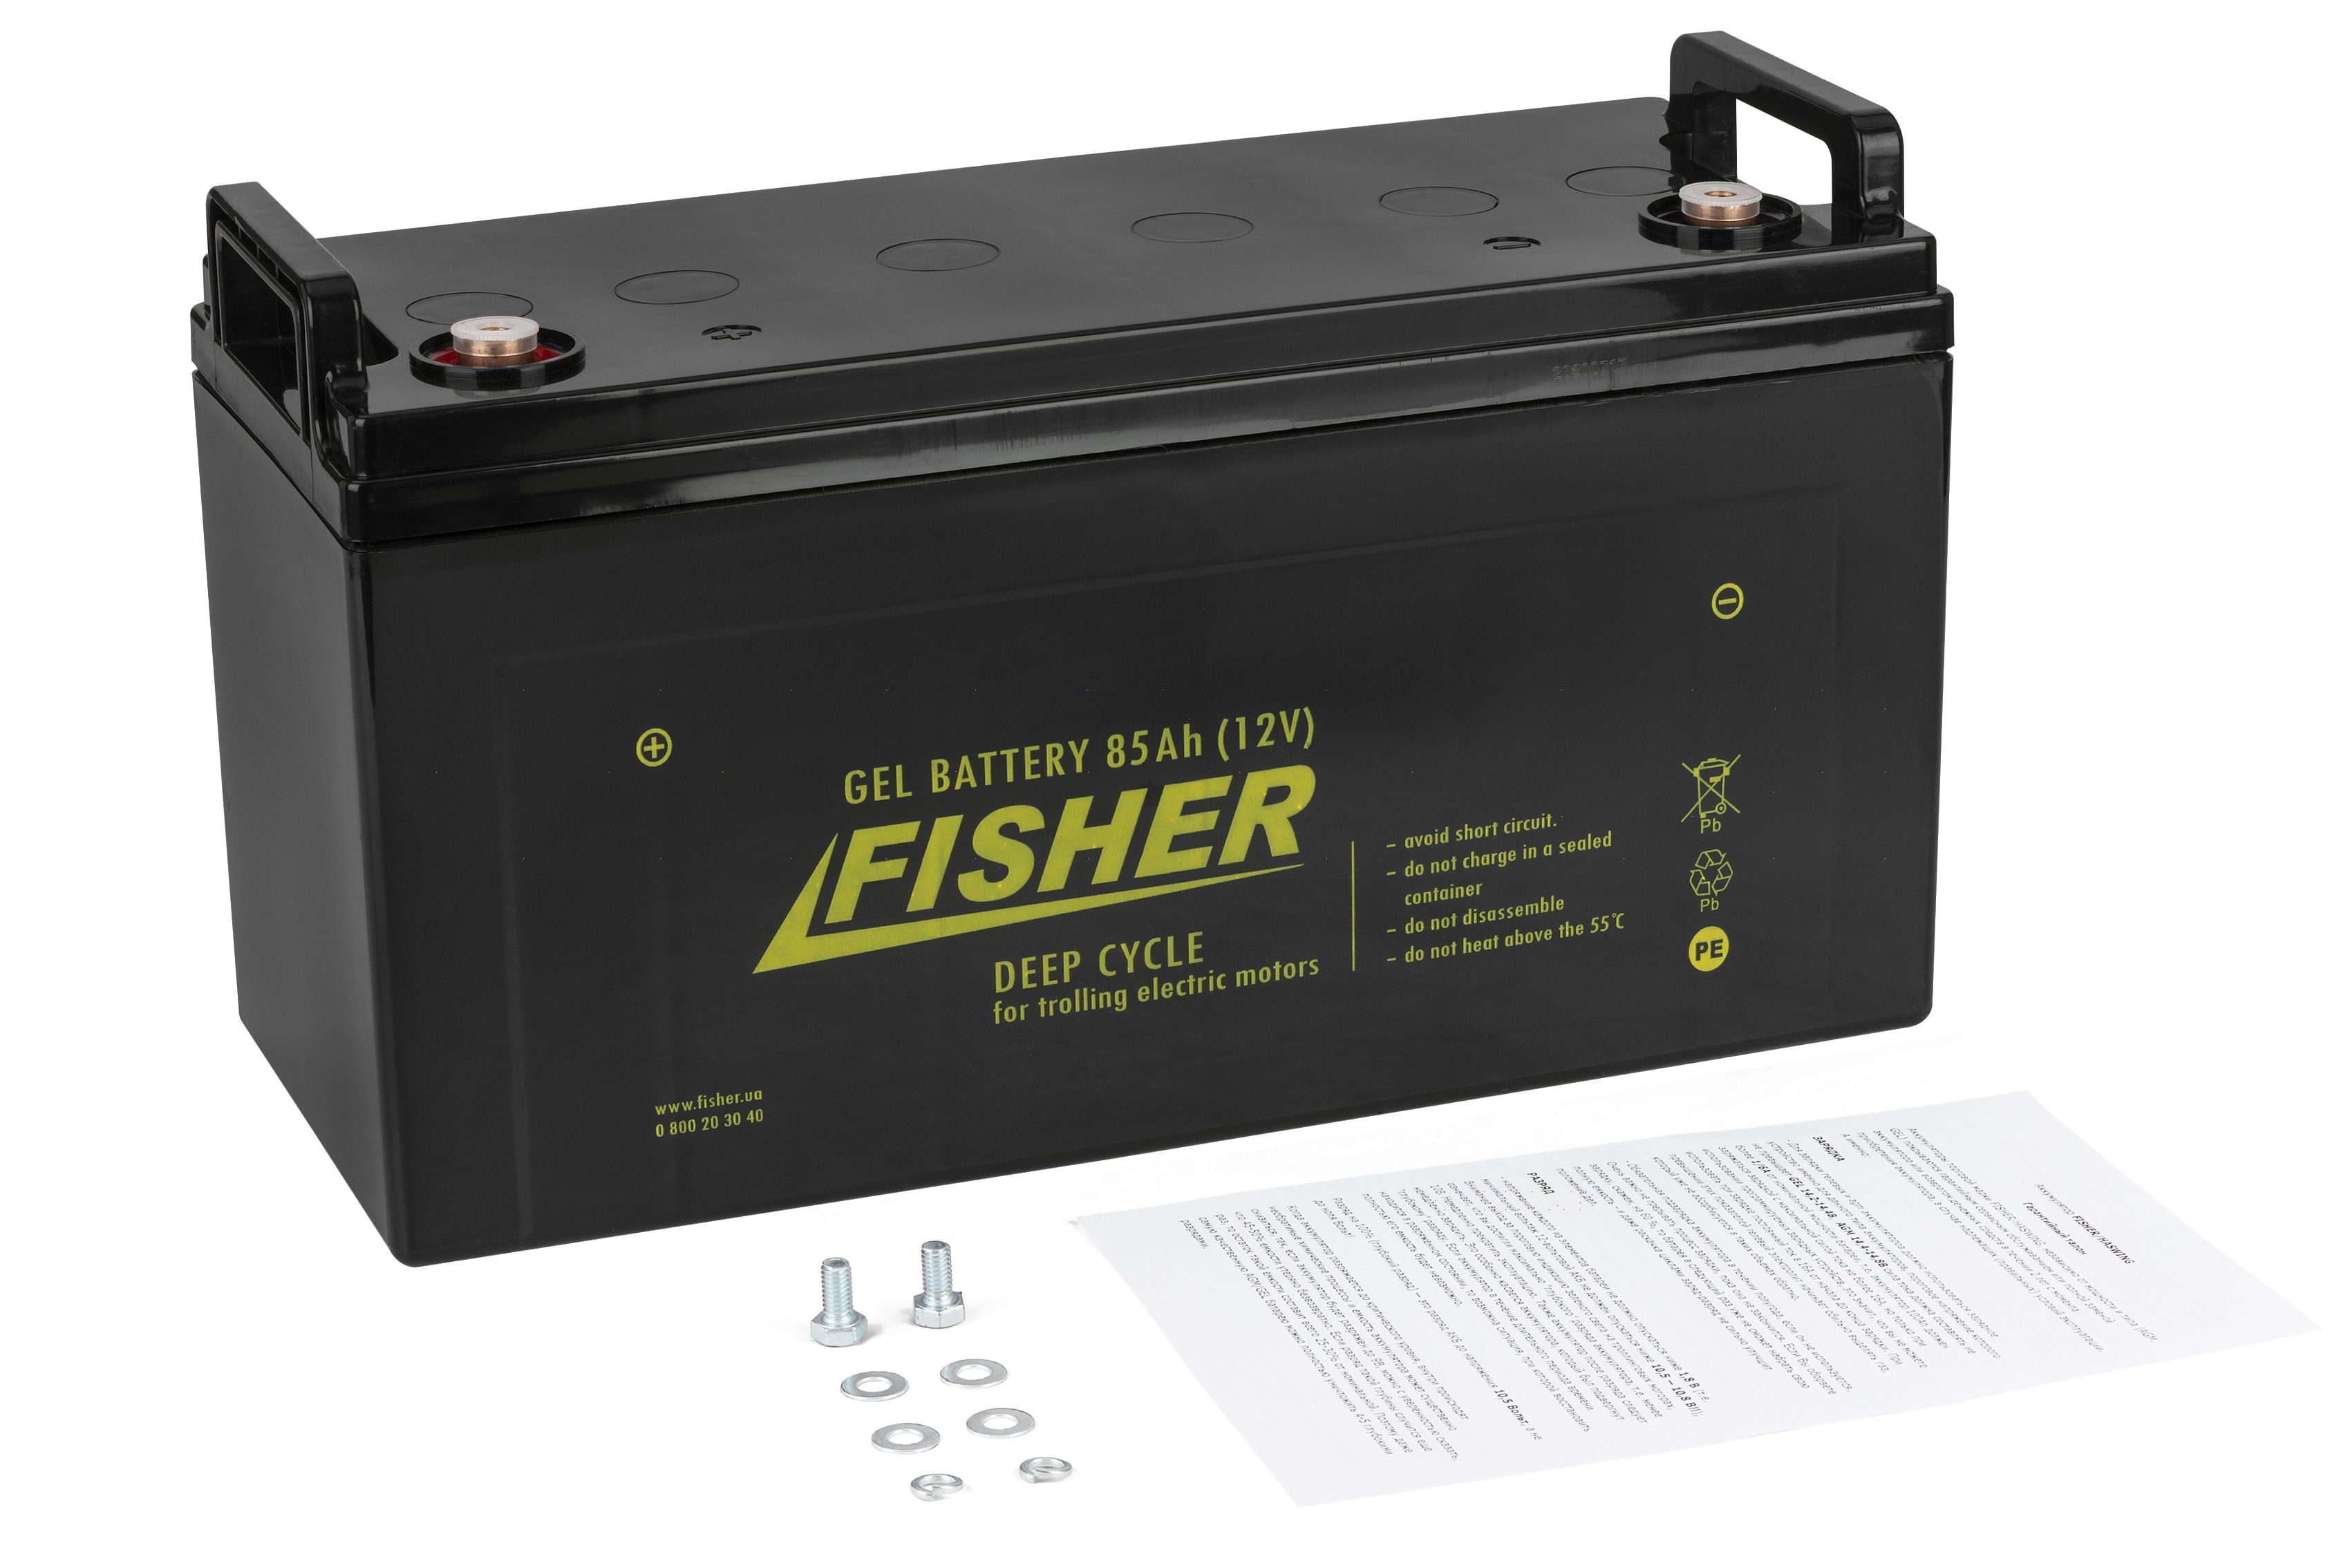  Аккумулятор для лодочного электромотора Fisher 85AH GEL в .